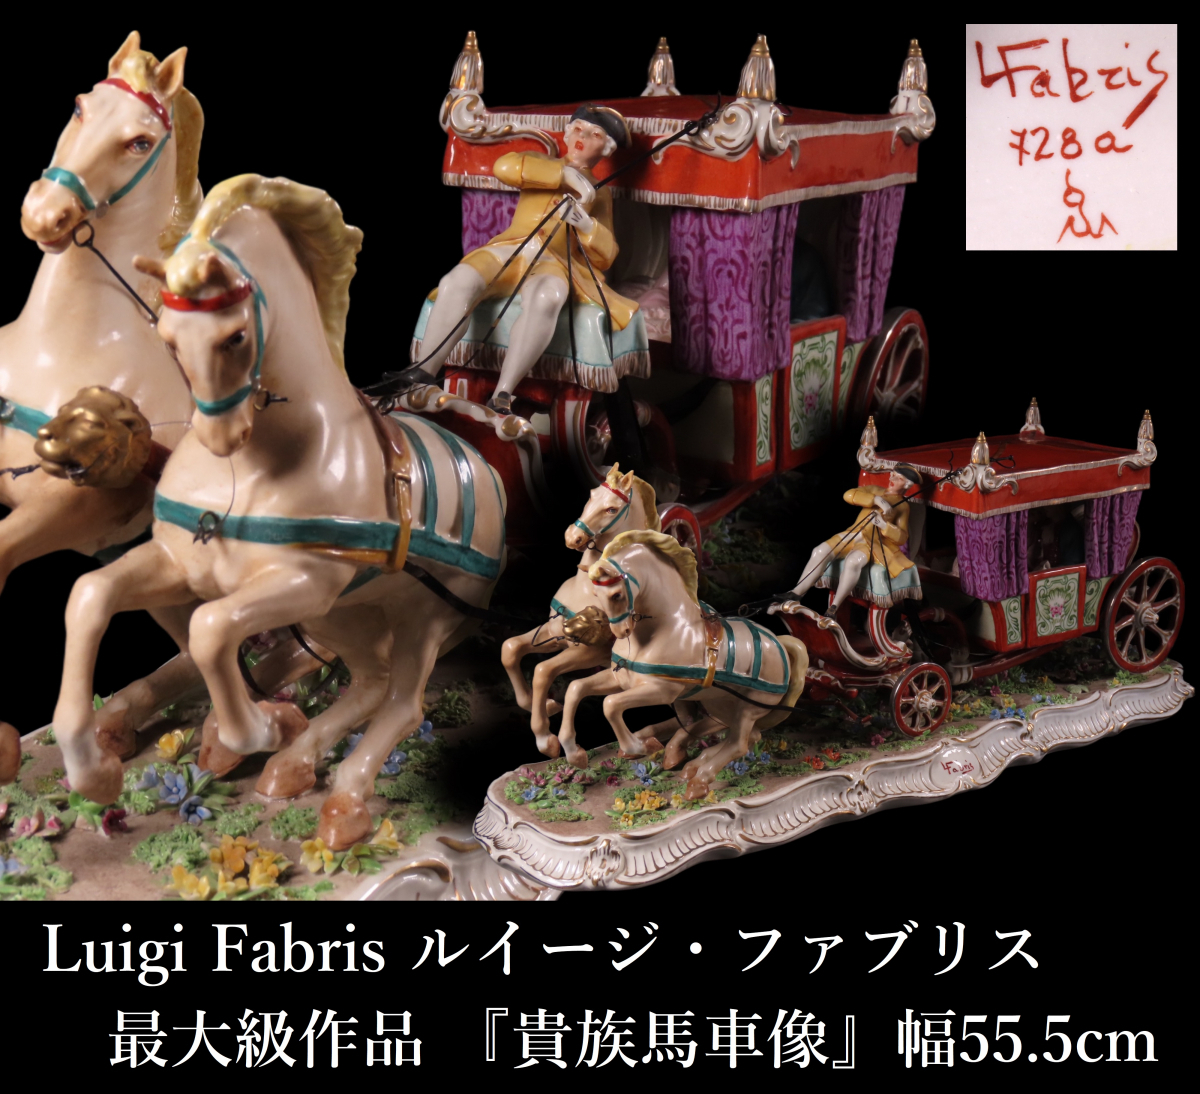 【晃】Luigi Fabris ルイージ・ファブリス 最大級作品 『貴族馬車像』 彩色陶器人形 ポーセリンドール 幅55.5cm 極上細密造 西洋美術_画像1